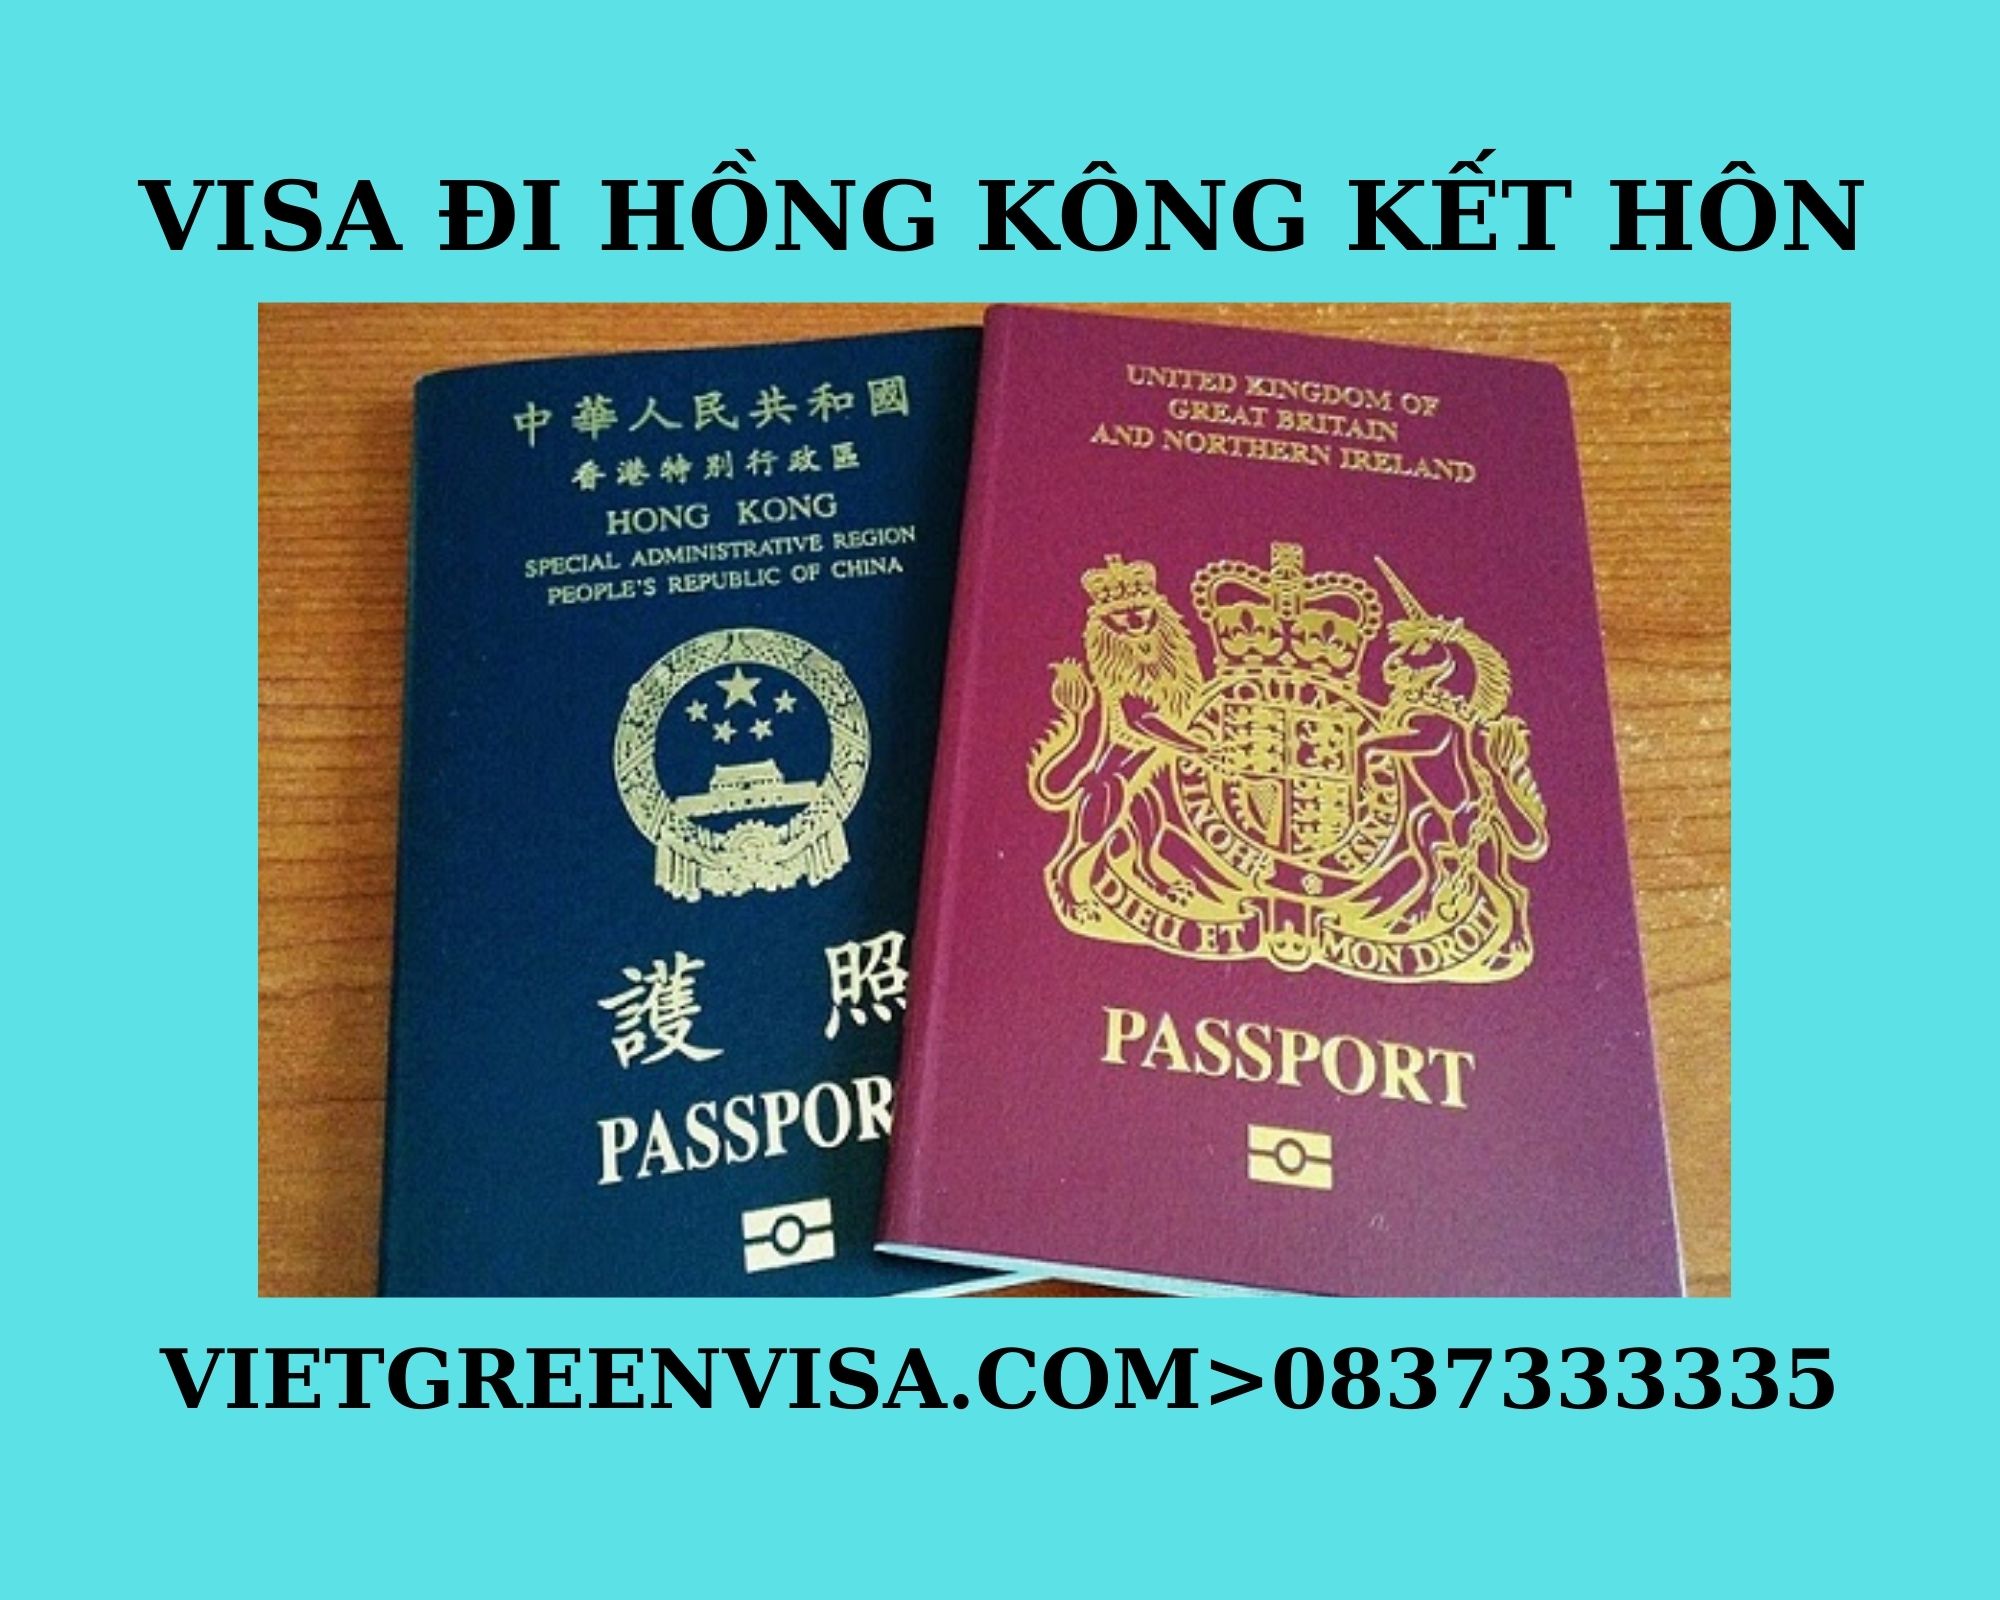 Dịch vụ xin visa sang Hồng Kông kết hôn uy tín , Thủ tục kết hôn tại Hồng Kông, Xin visa Hồng Kông Kết hôn, dịch vụ kết hôn Hồng Kông